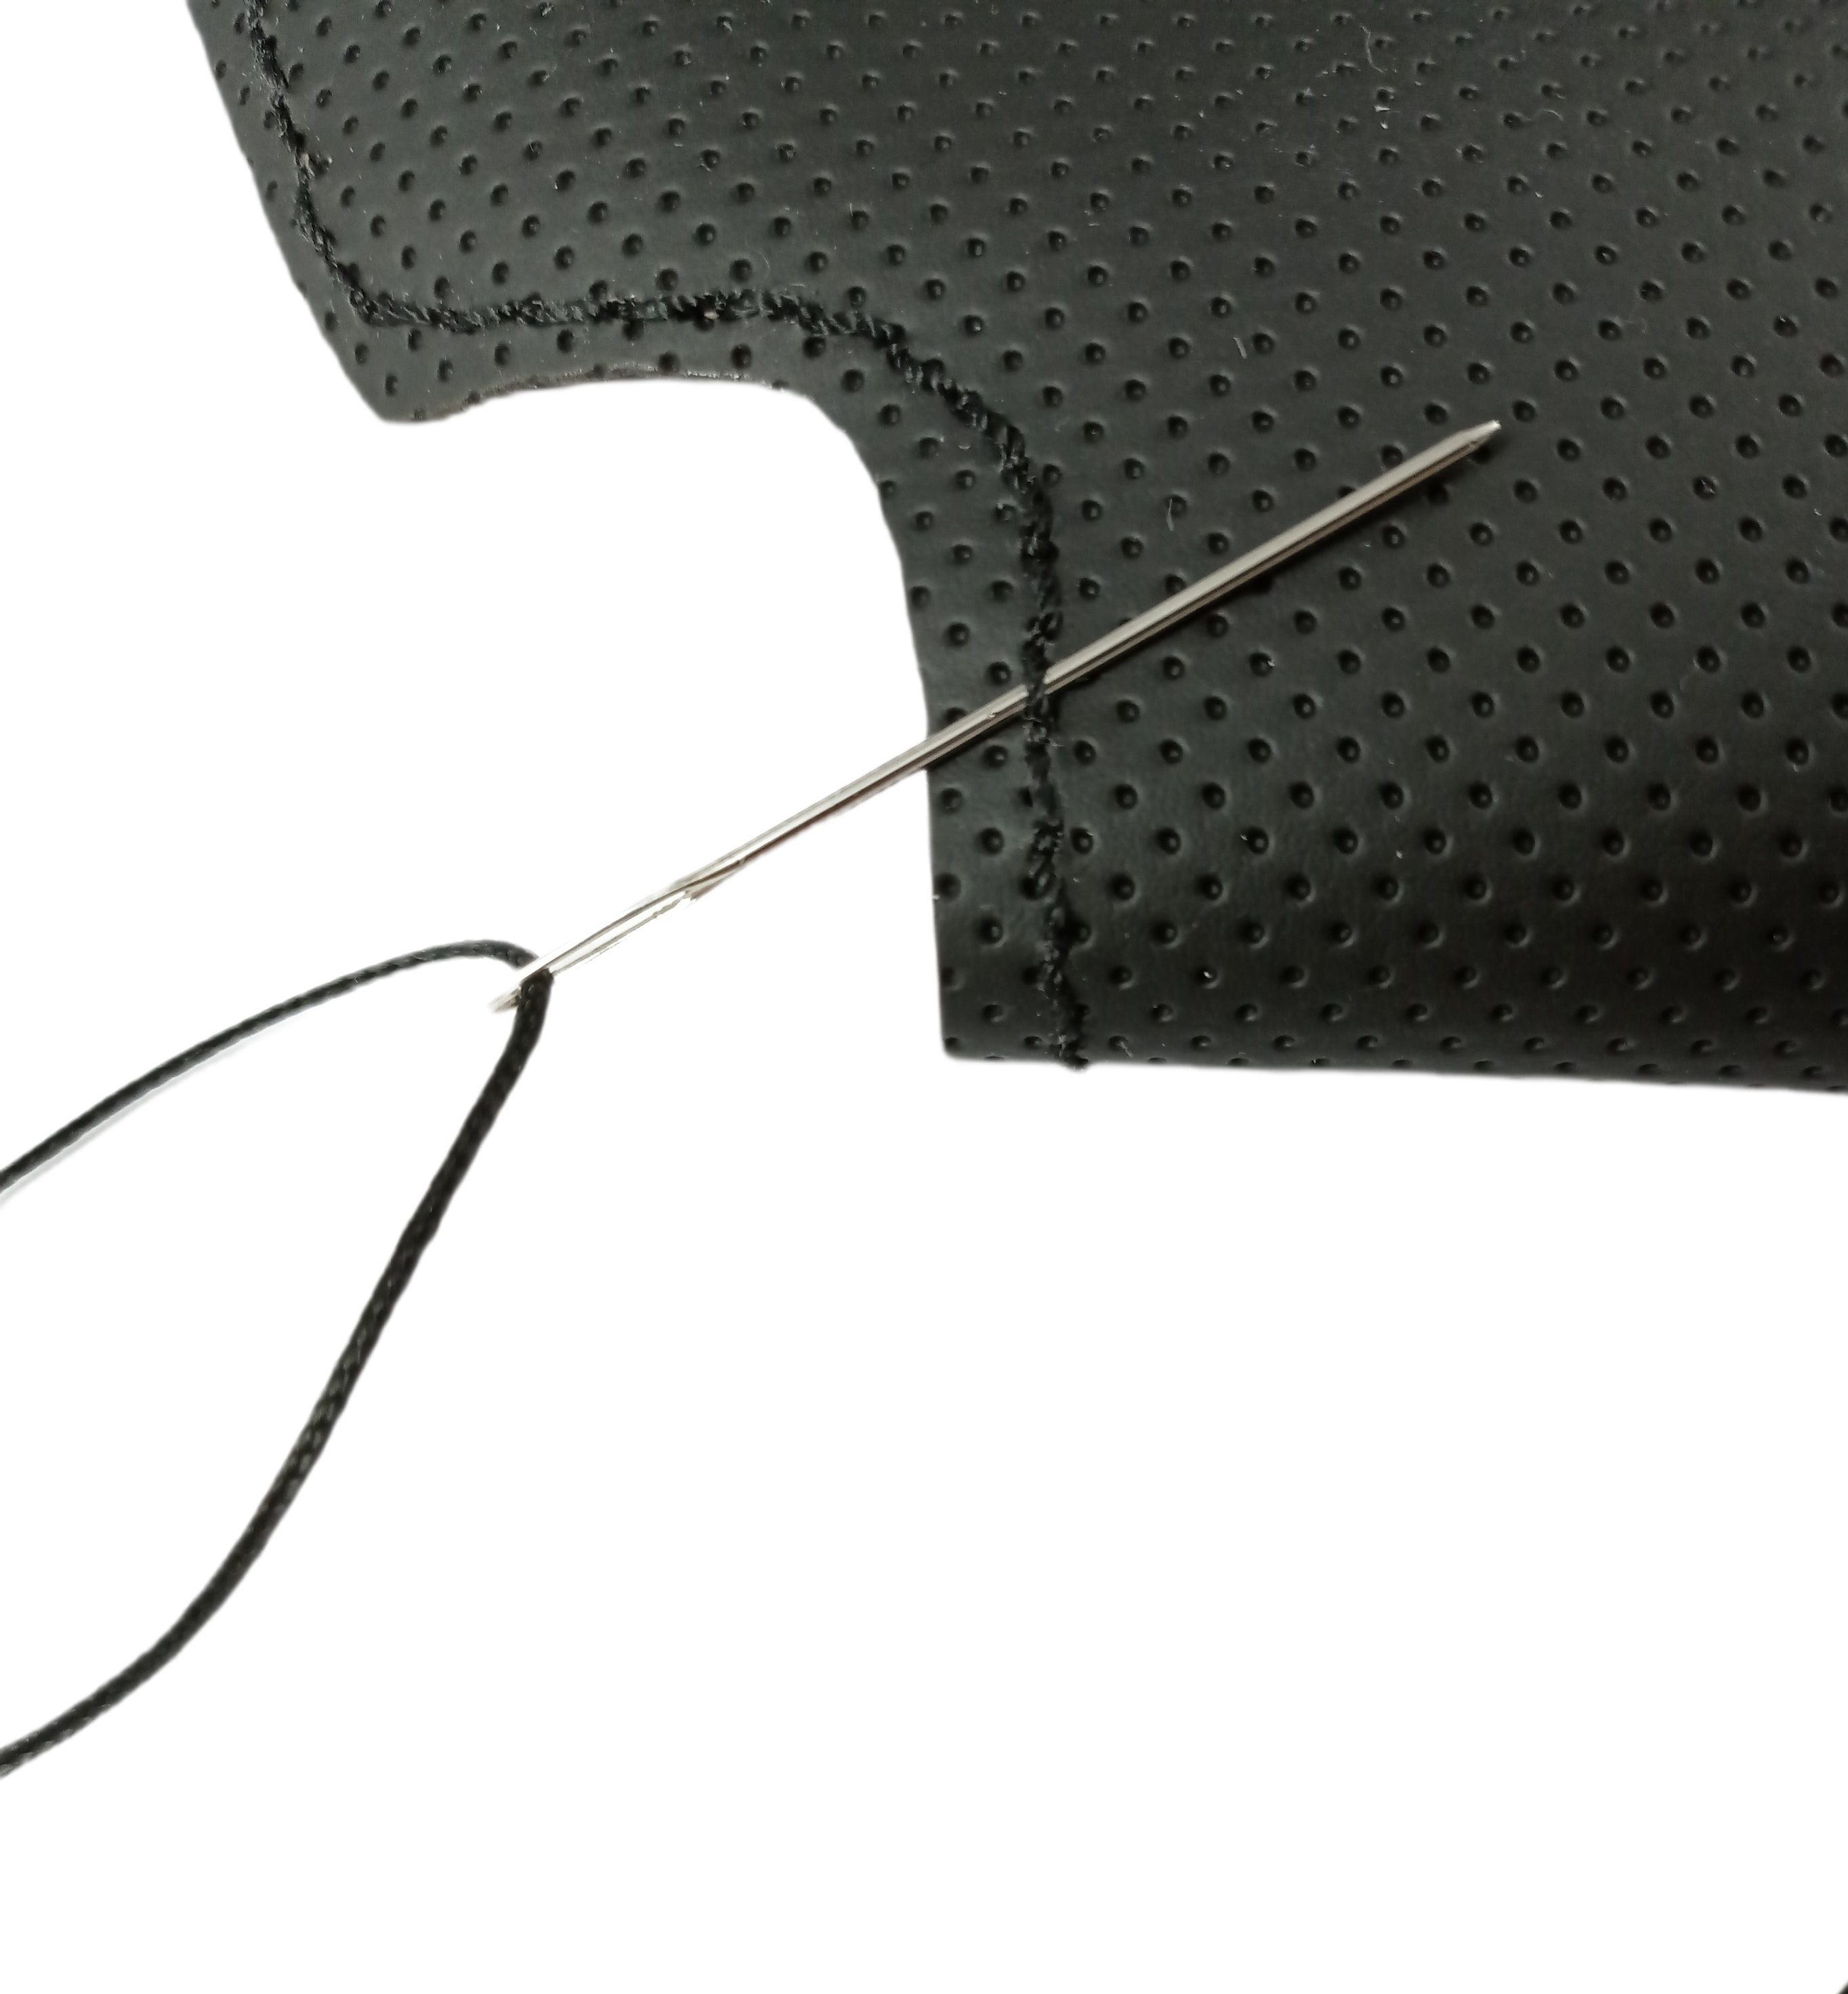 Cubierta para el Volante para AUDI Q3 Q5 (2013-2015) Eco Cuero Para coser